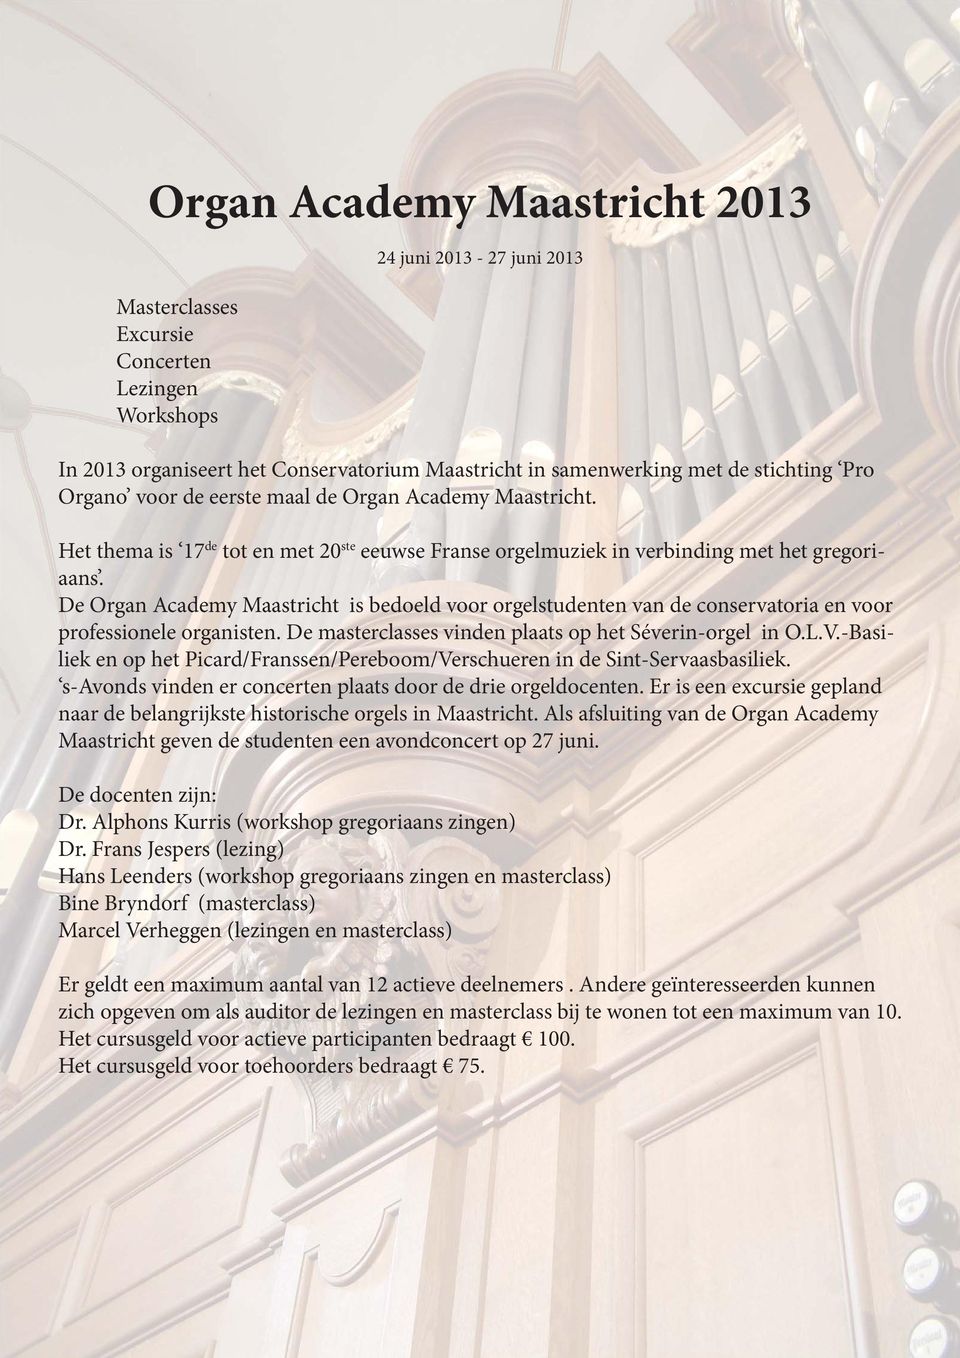 De Organ Academy Maastricht is bedoeld voor orgelstudenten van de conservatoria en voor professionele organisten. De masterclasses vinden plaats op het Séverin-orgel in O.L.V.